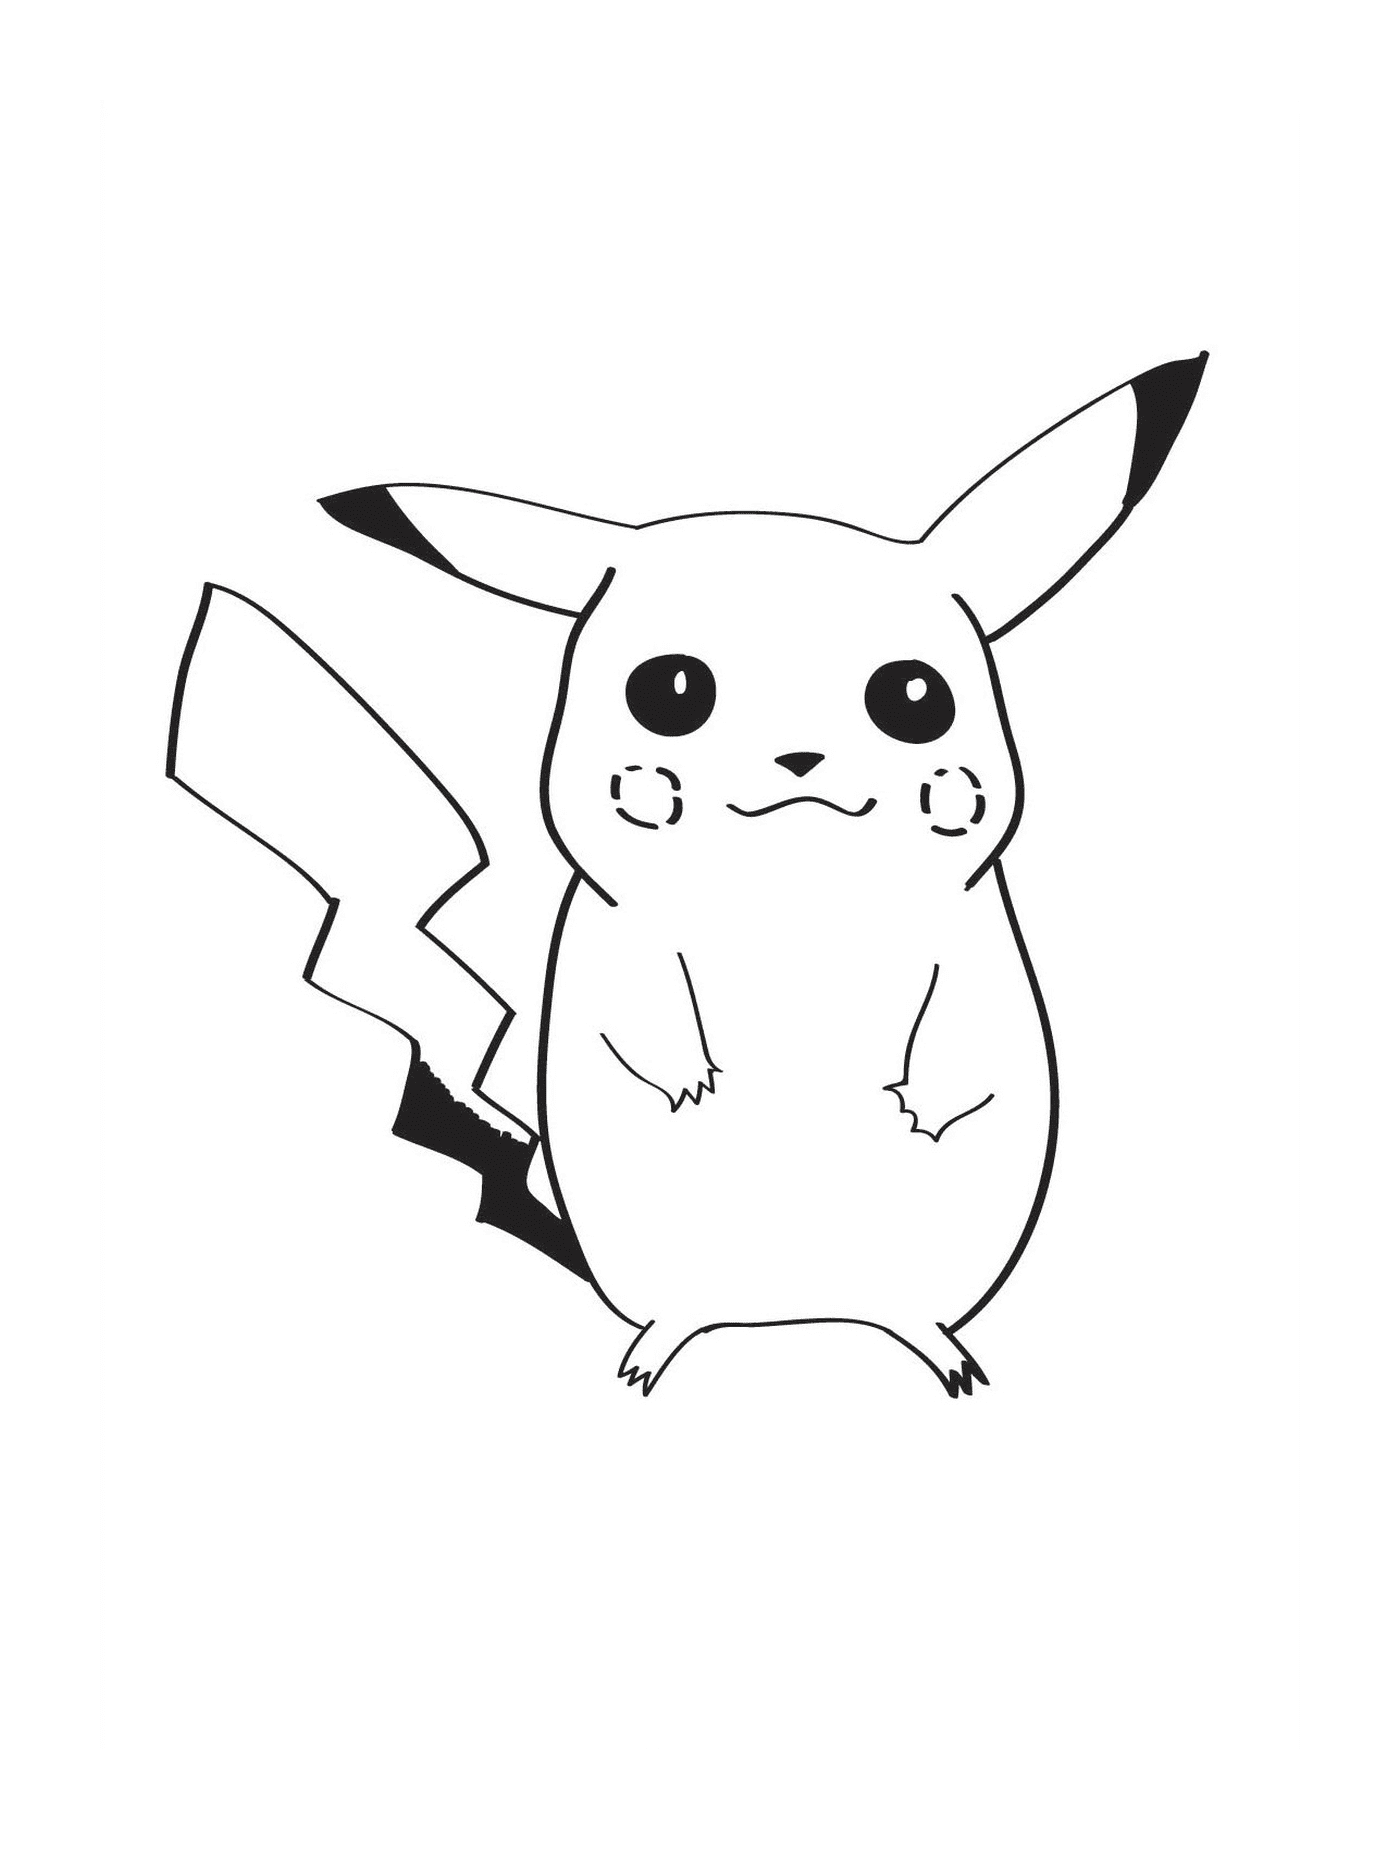  Pikachu, adorable pequeña criatura 